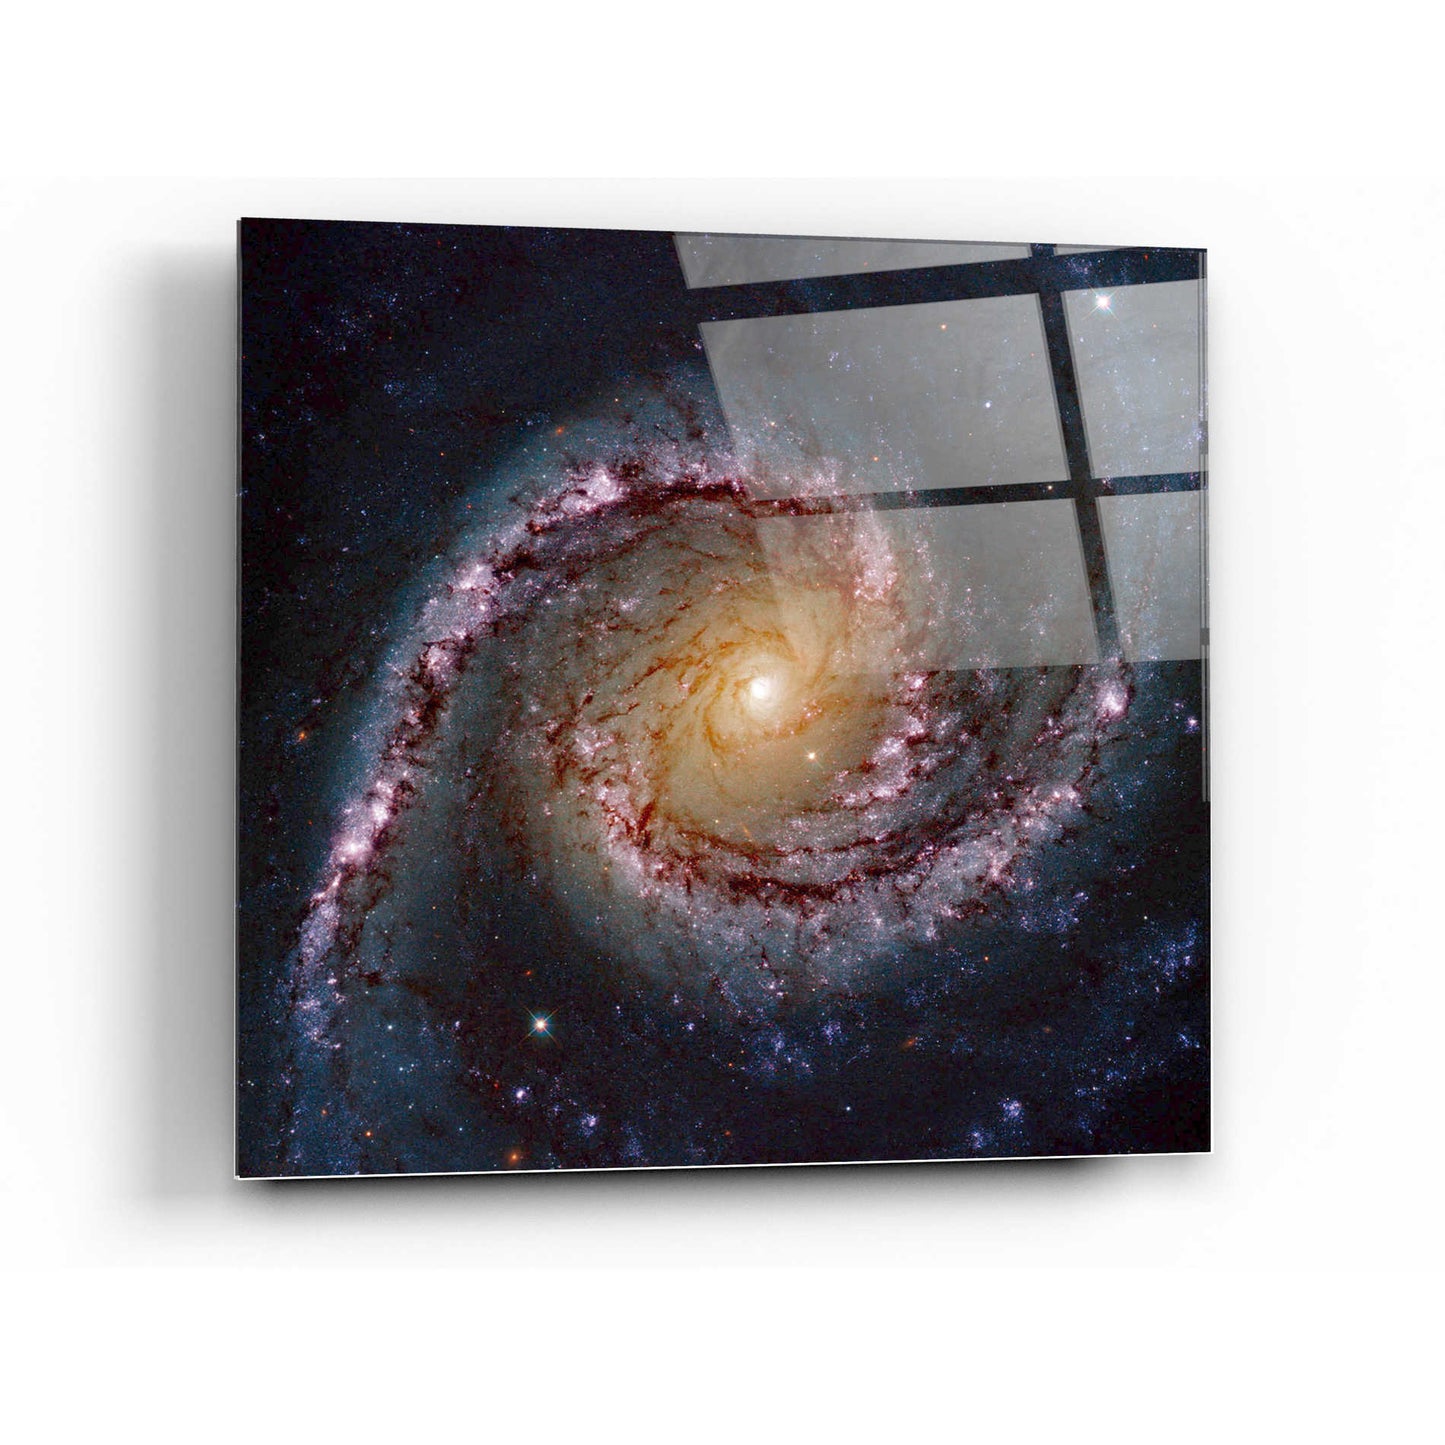 Epic Art "Grand Swirls" Hubble Space Telescope Acrylic Glass Wall Art,24x24